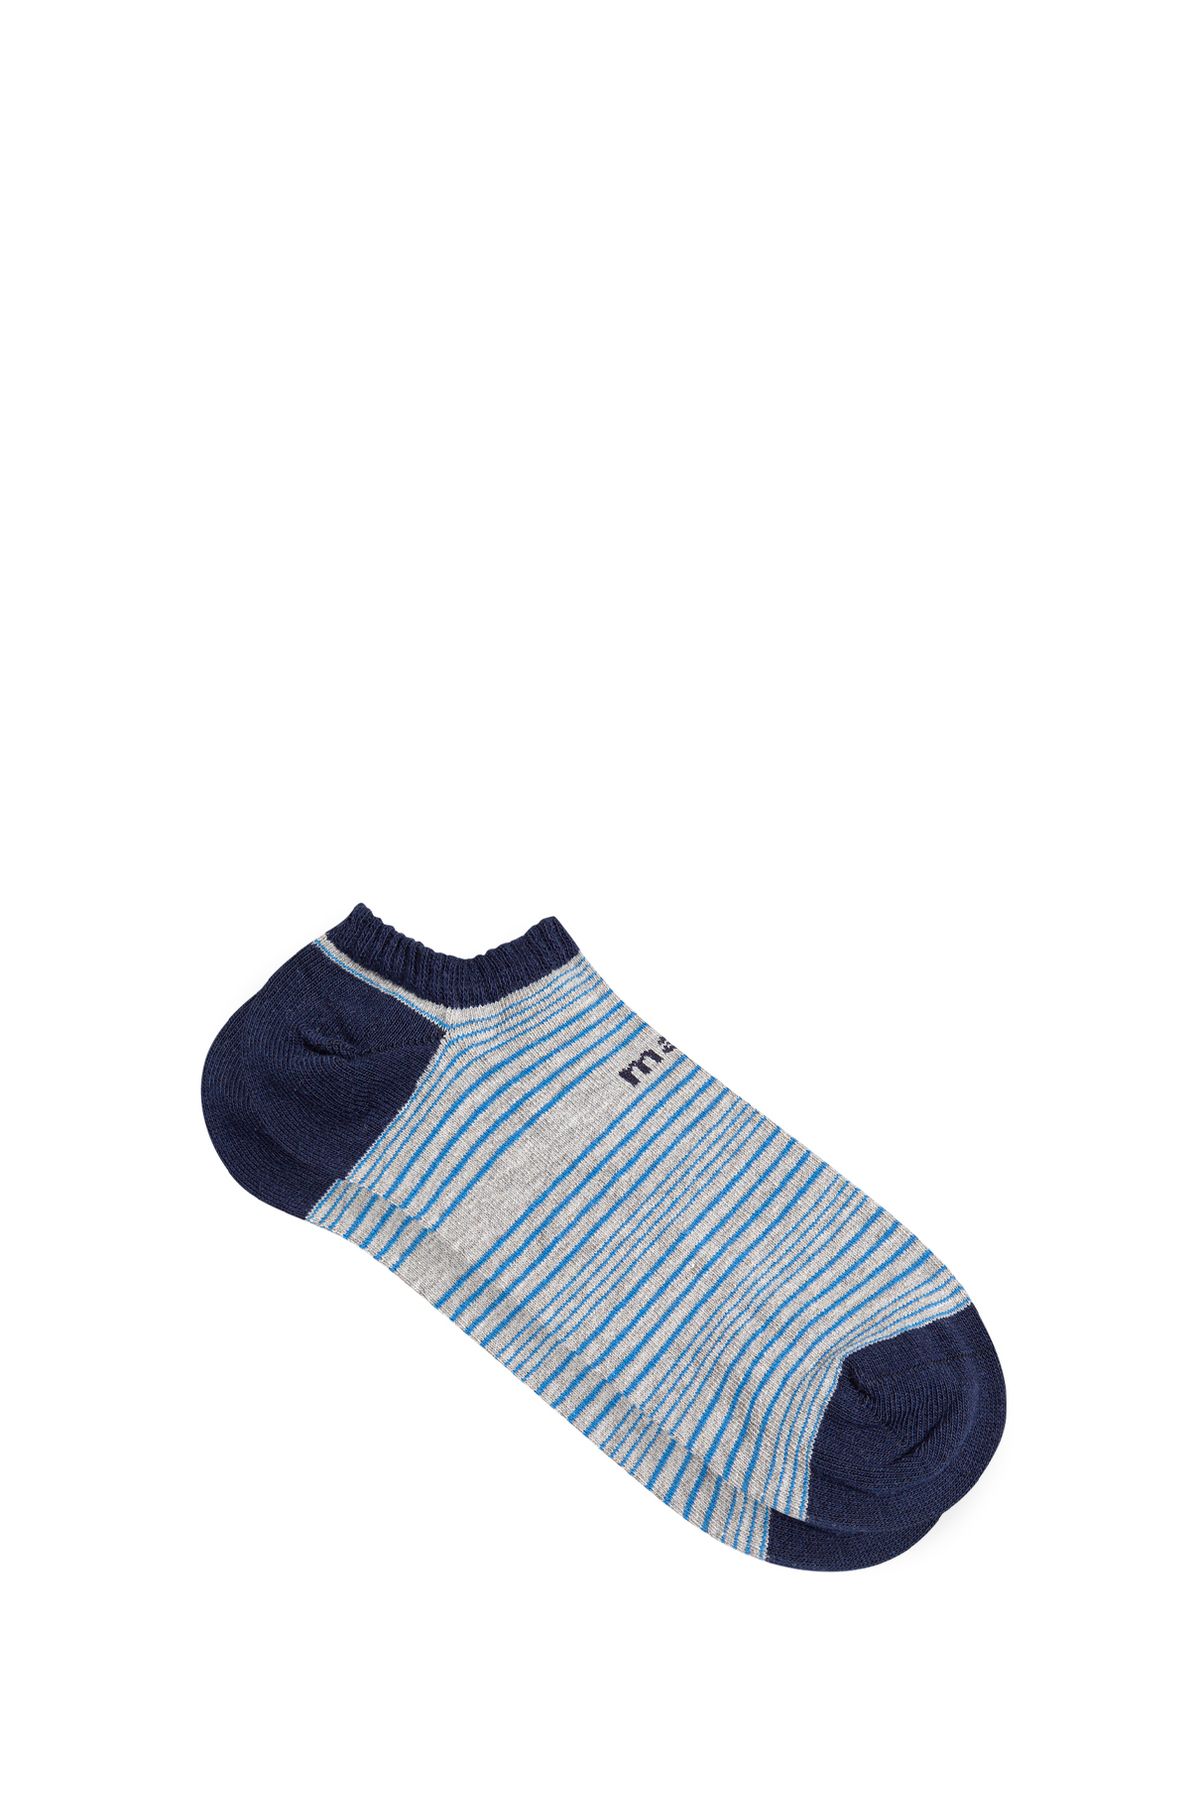 Mavi Çizgili Babet Çorabı 0910478-32174